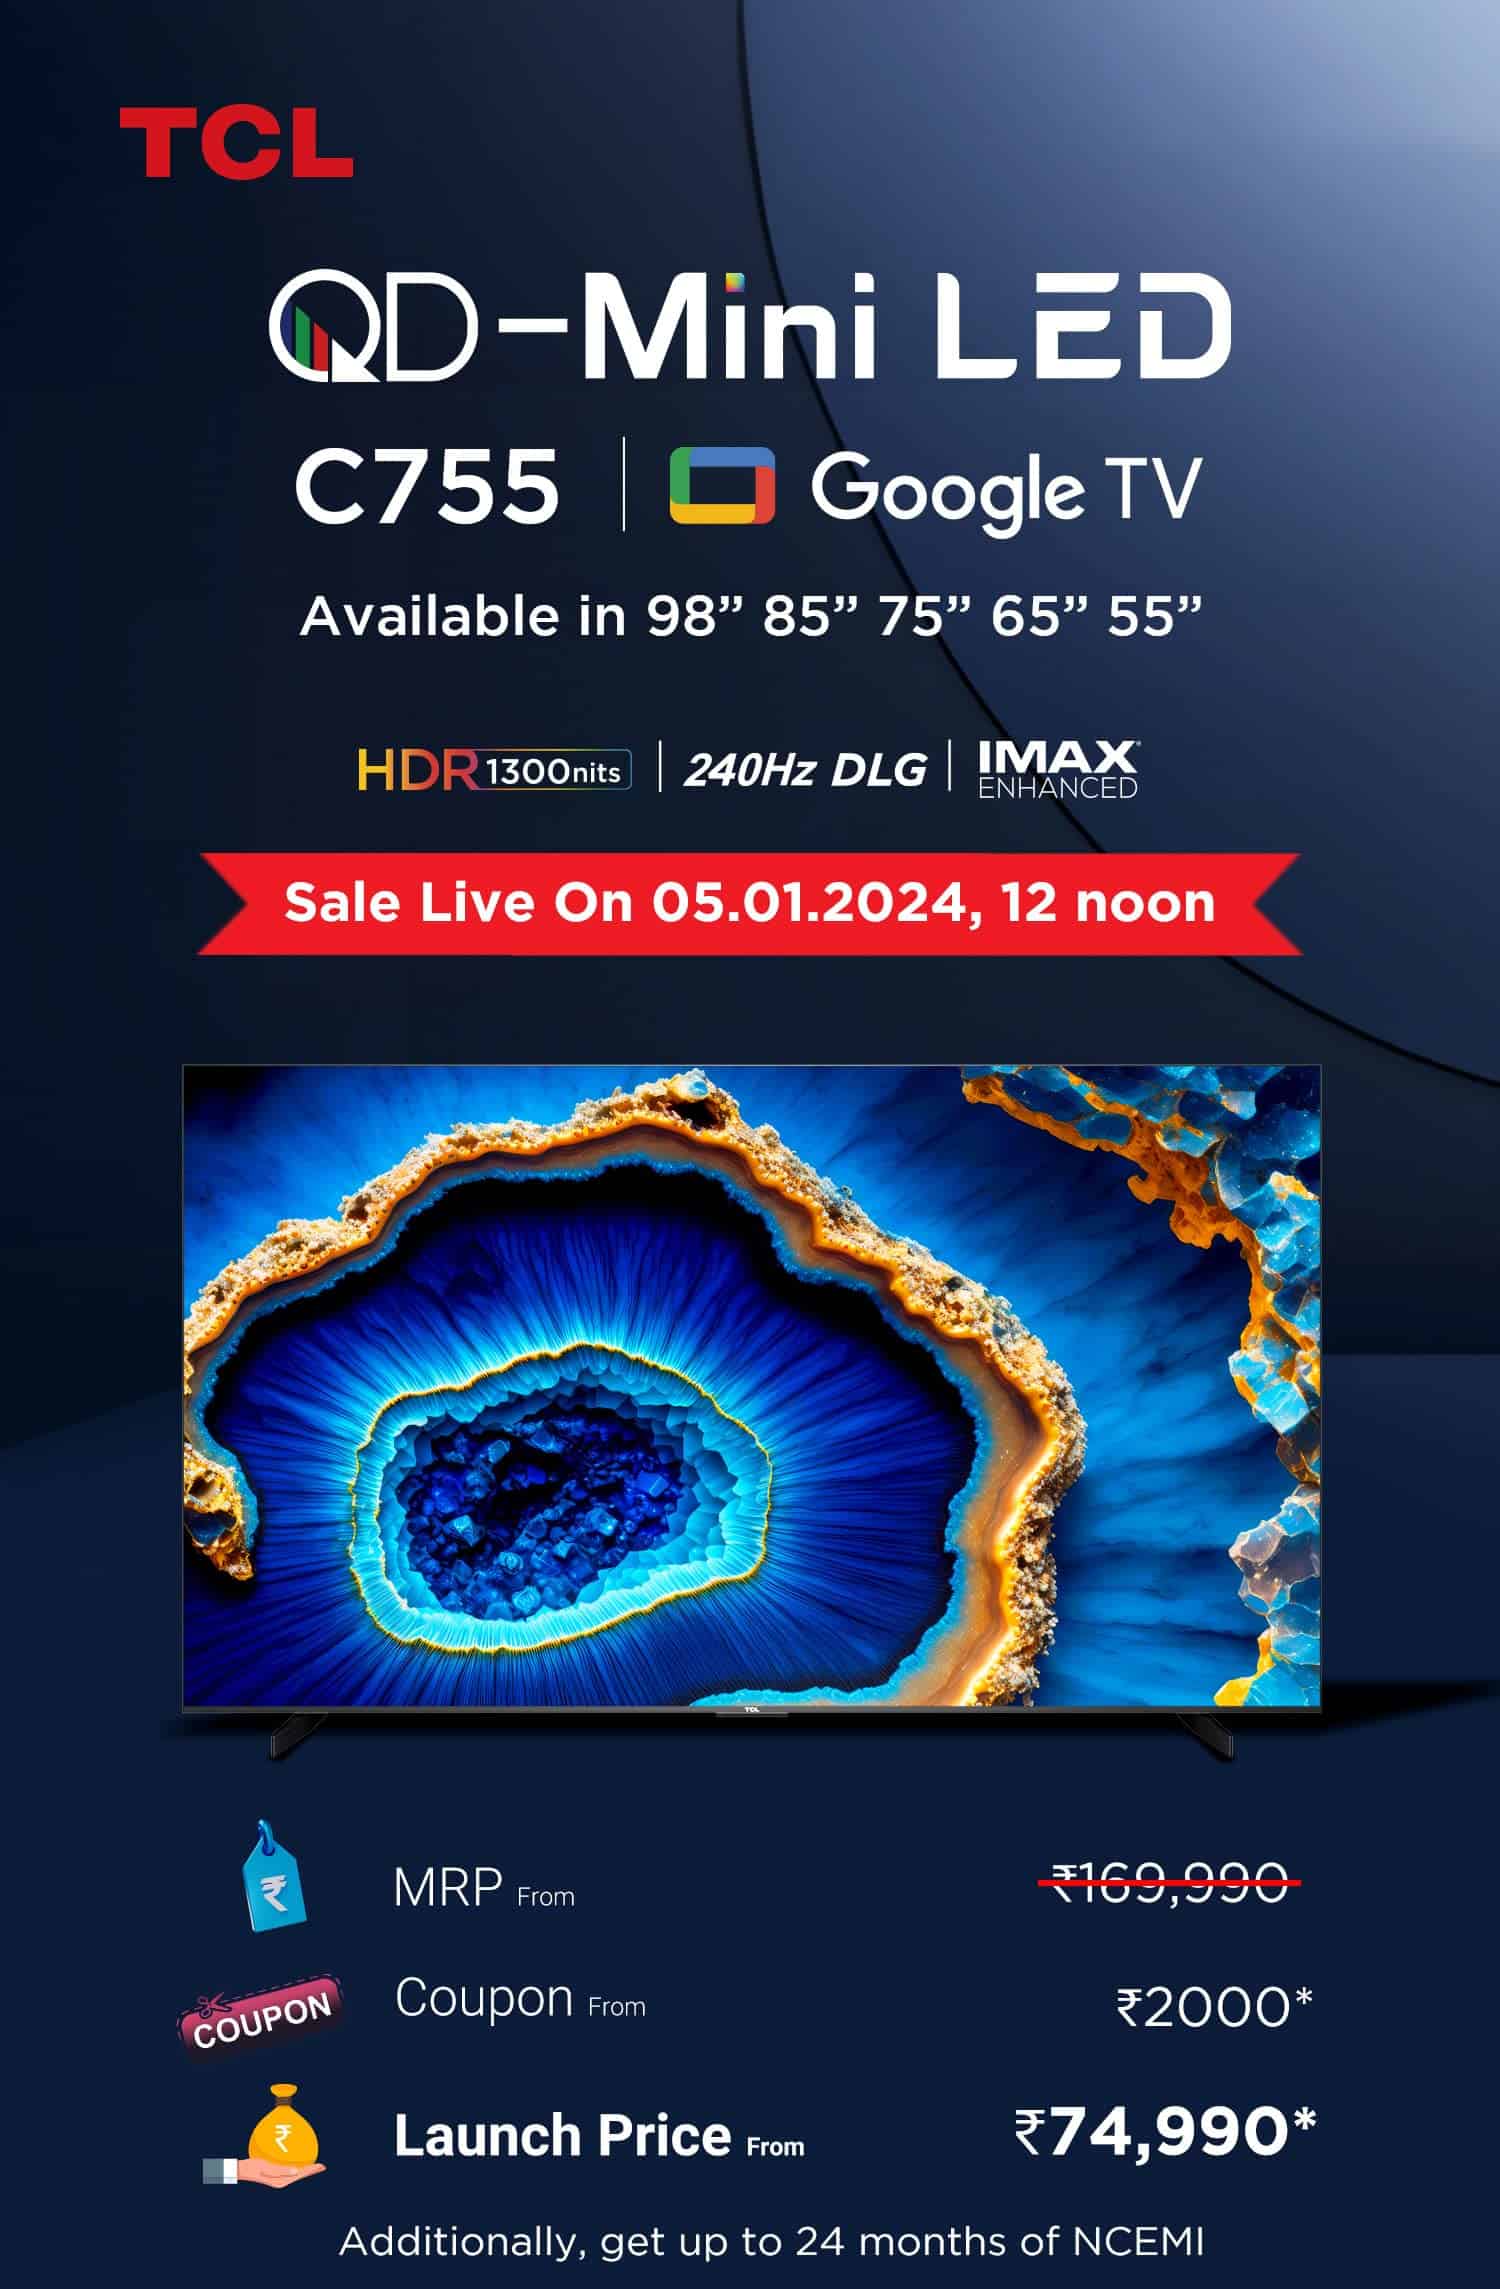 TCL QD-Mini LED C755 Google TV - 1